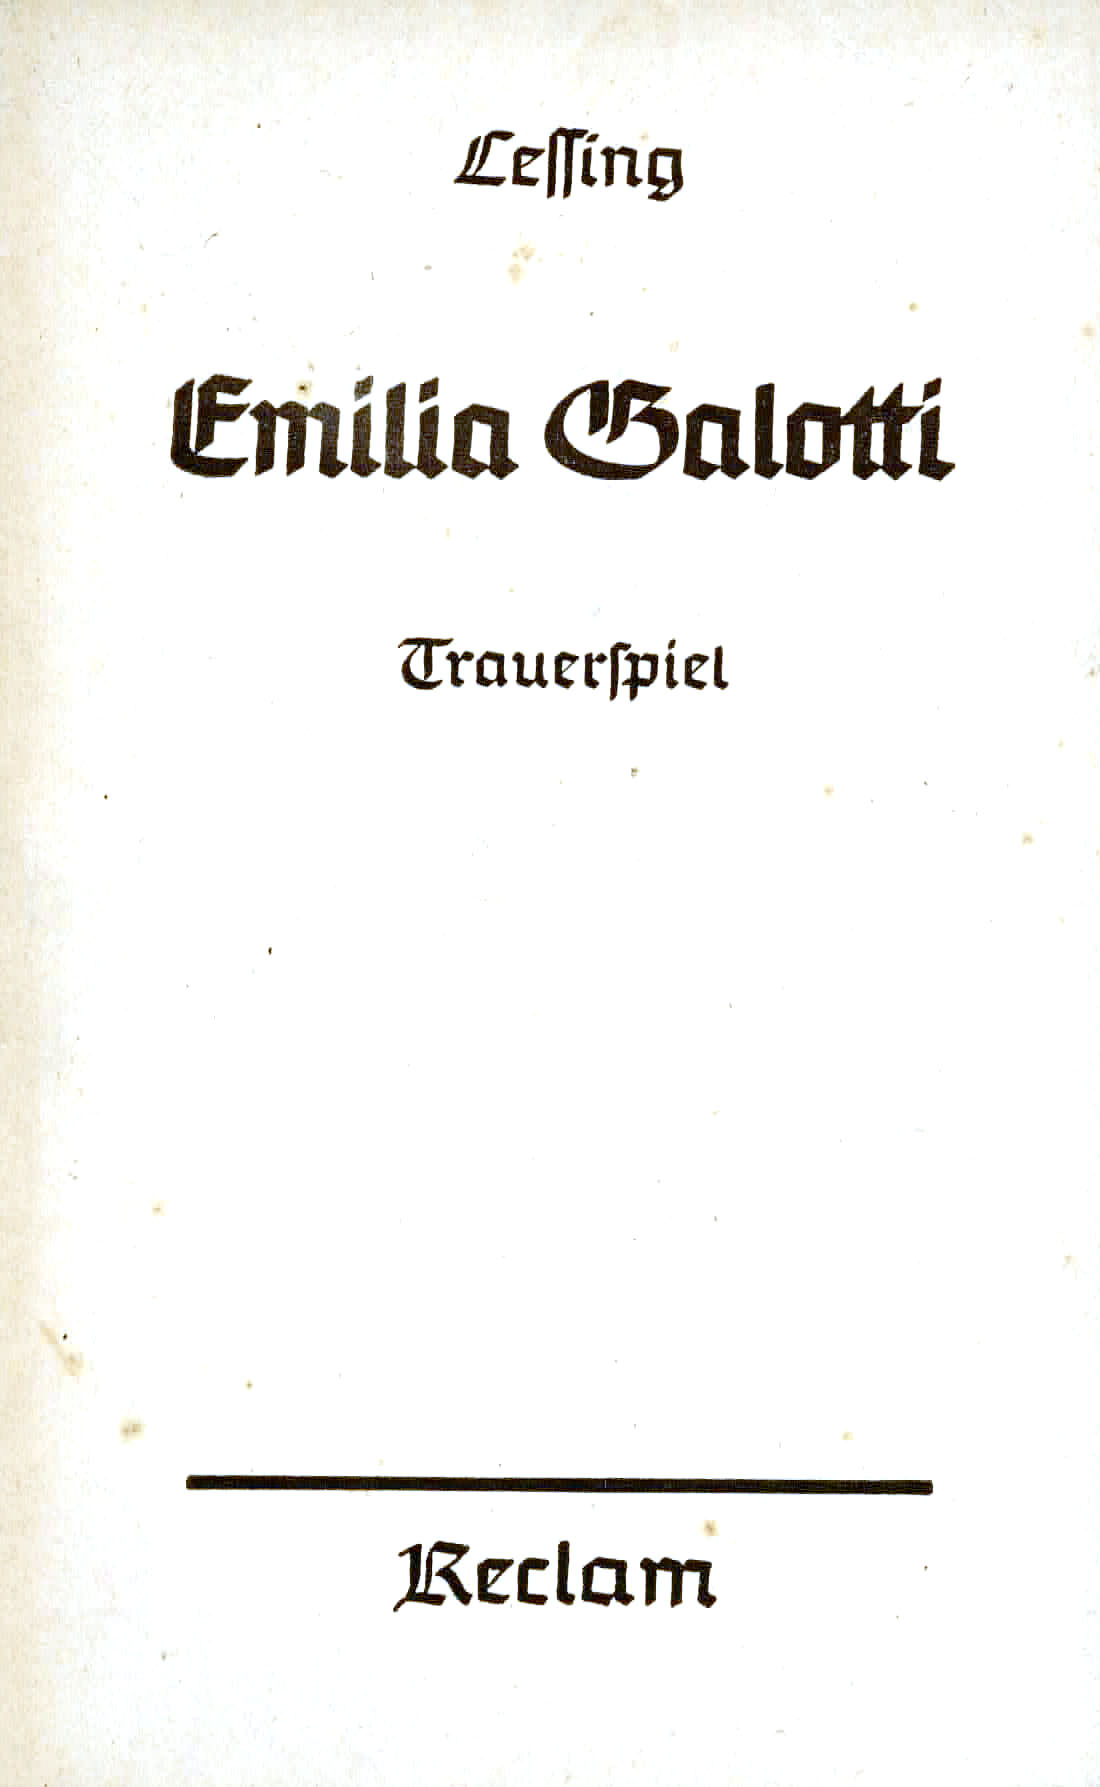 Emilia Galotti - Lessing, Gotthold Ephraim